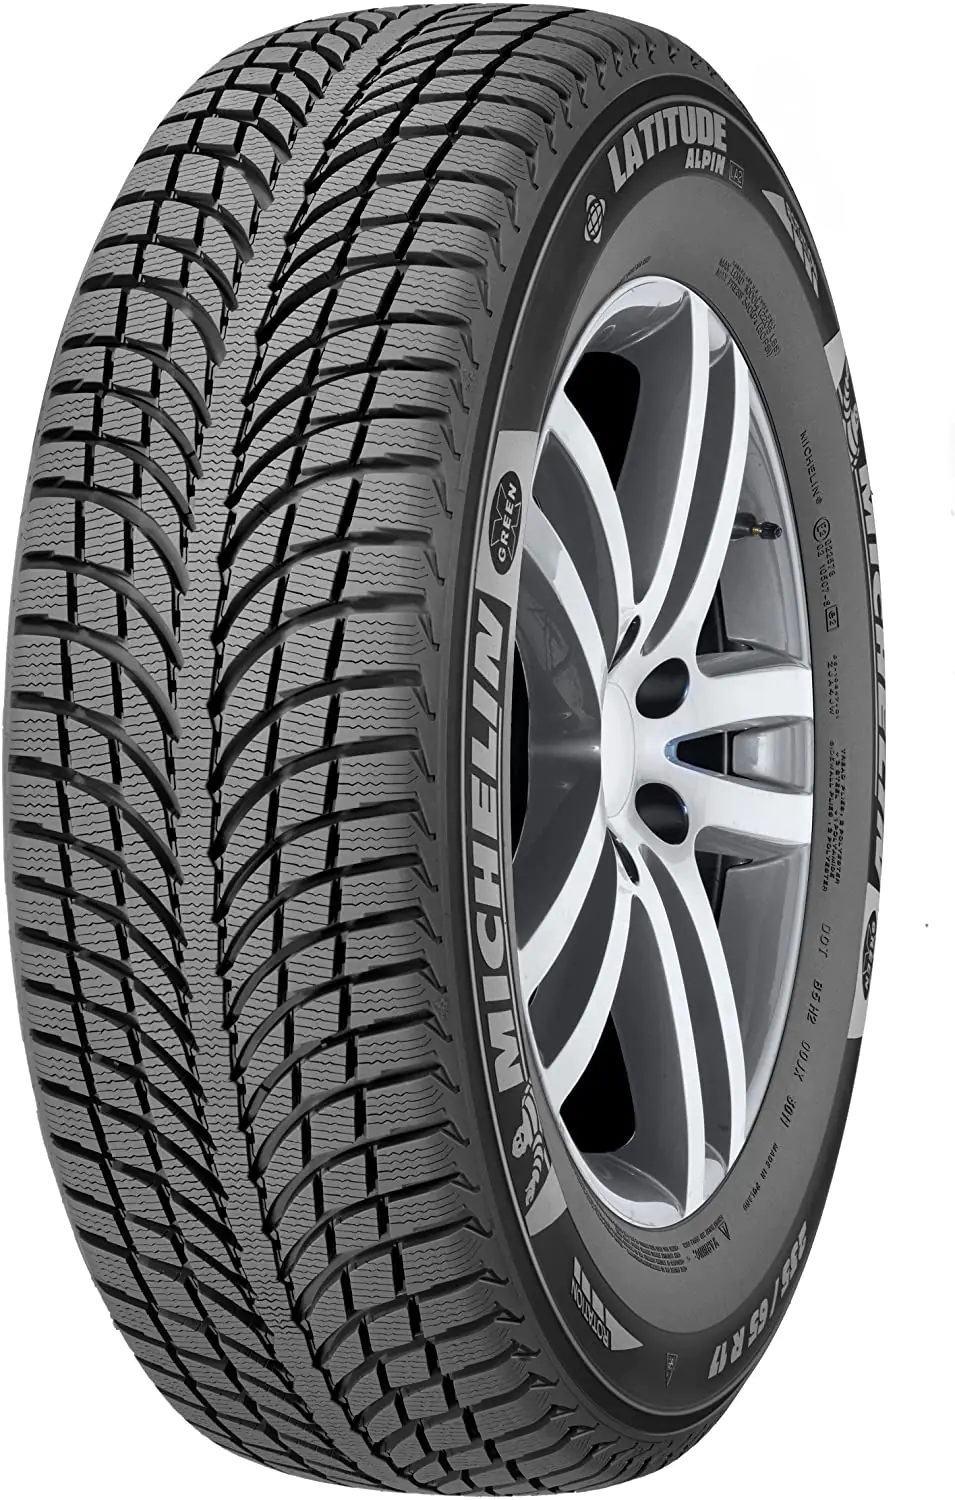 Michelin Michelin 225/45 R20 105V Latitudealpinla2 MO XL pneumatici nuovi Invernale 